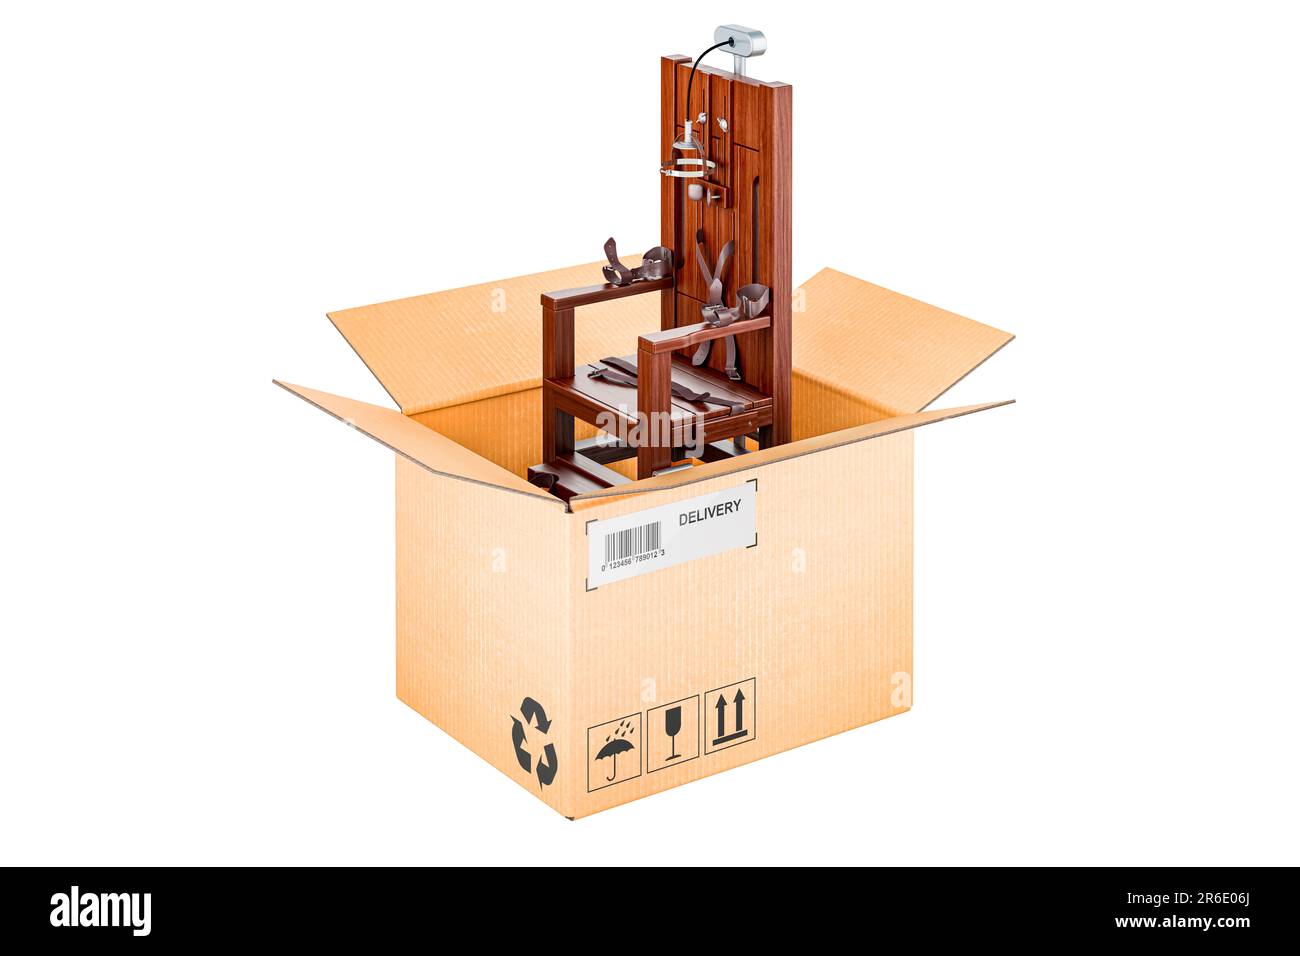 Elektrischer Stuhl im Karton, Lieferkonzept, 3D-Rendering auf weißem Hintergrund isoliert Stockfoto